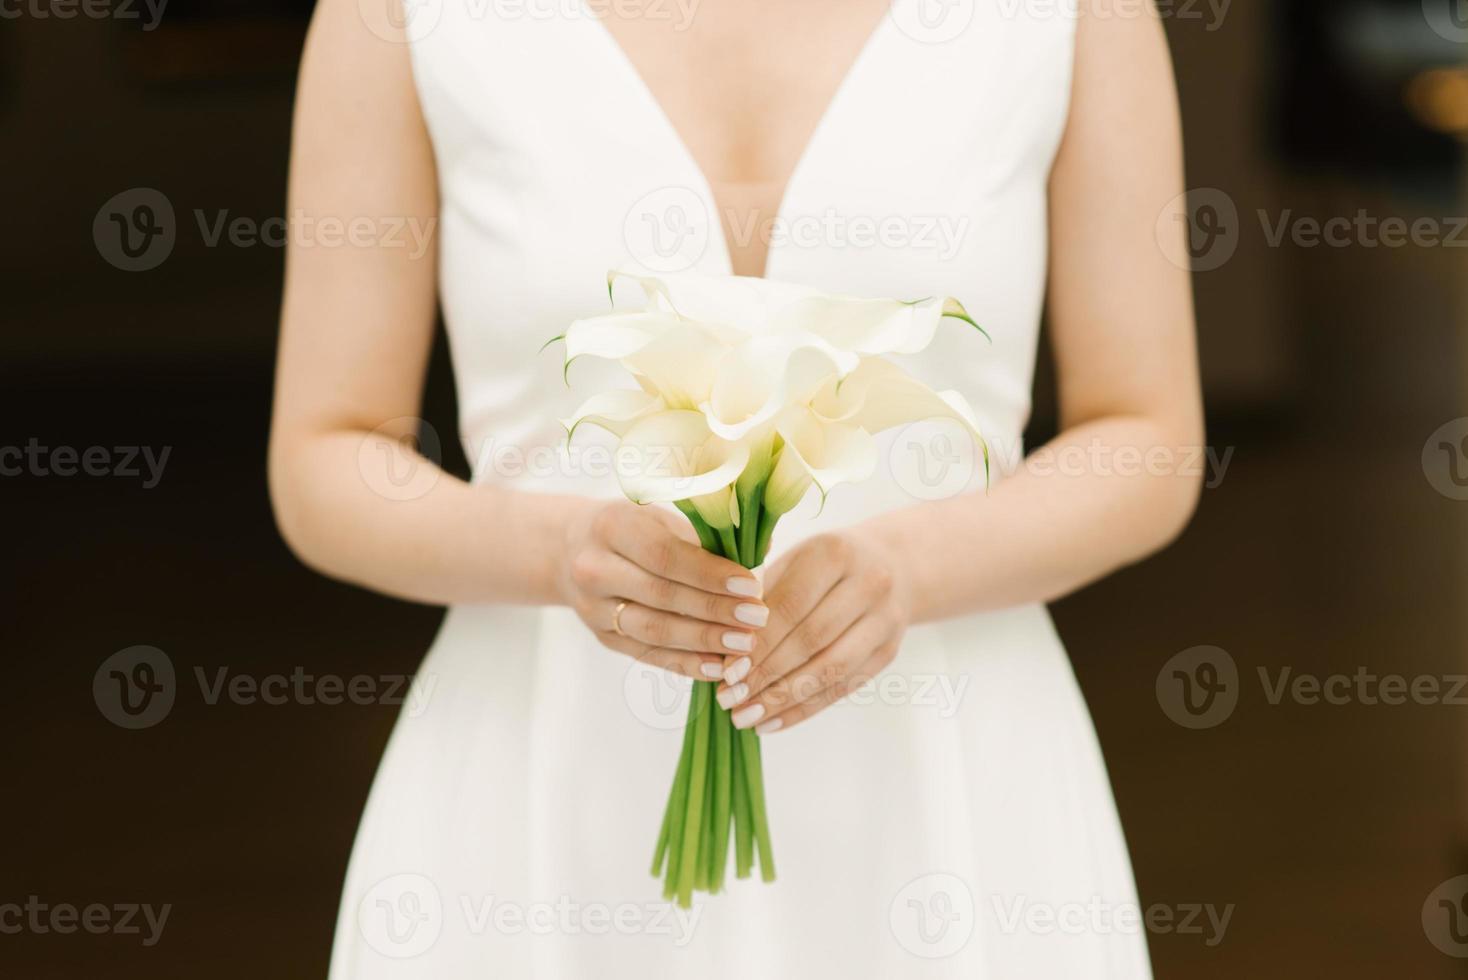 delicado ramo blanco de lirios calla en manos de la novia en la boda foto